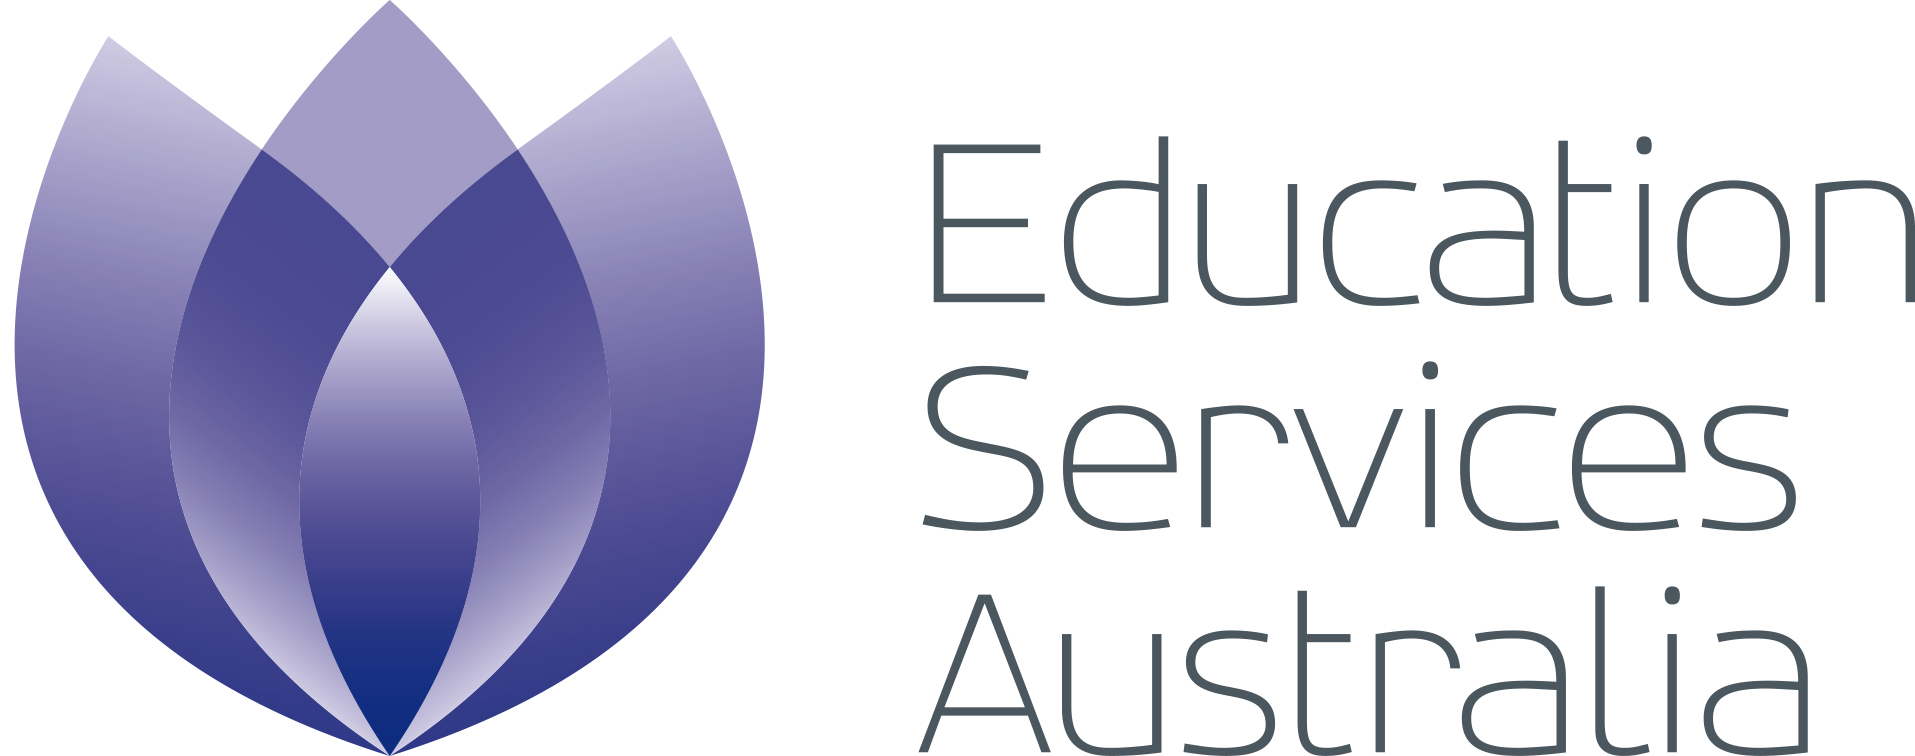 edu-services-australia.png